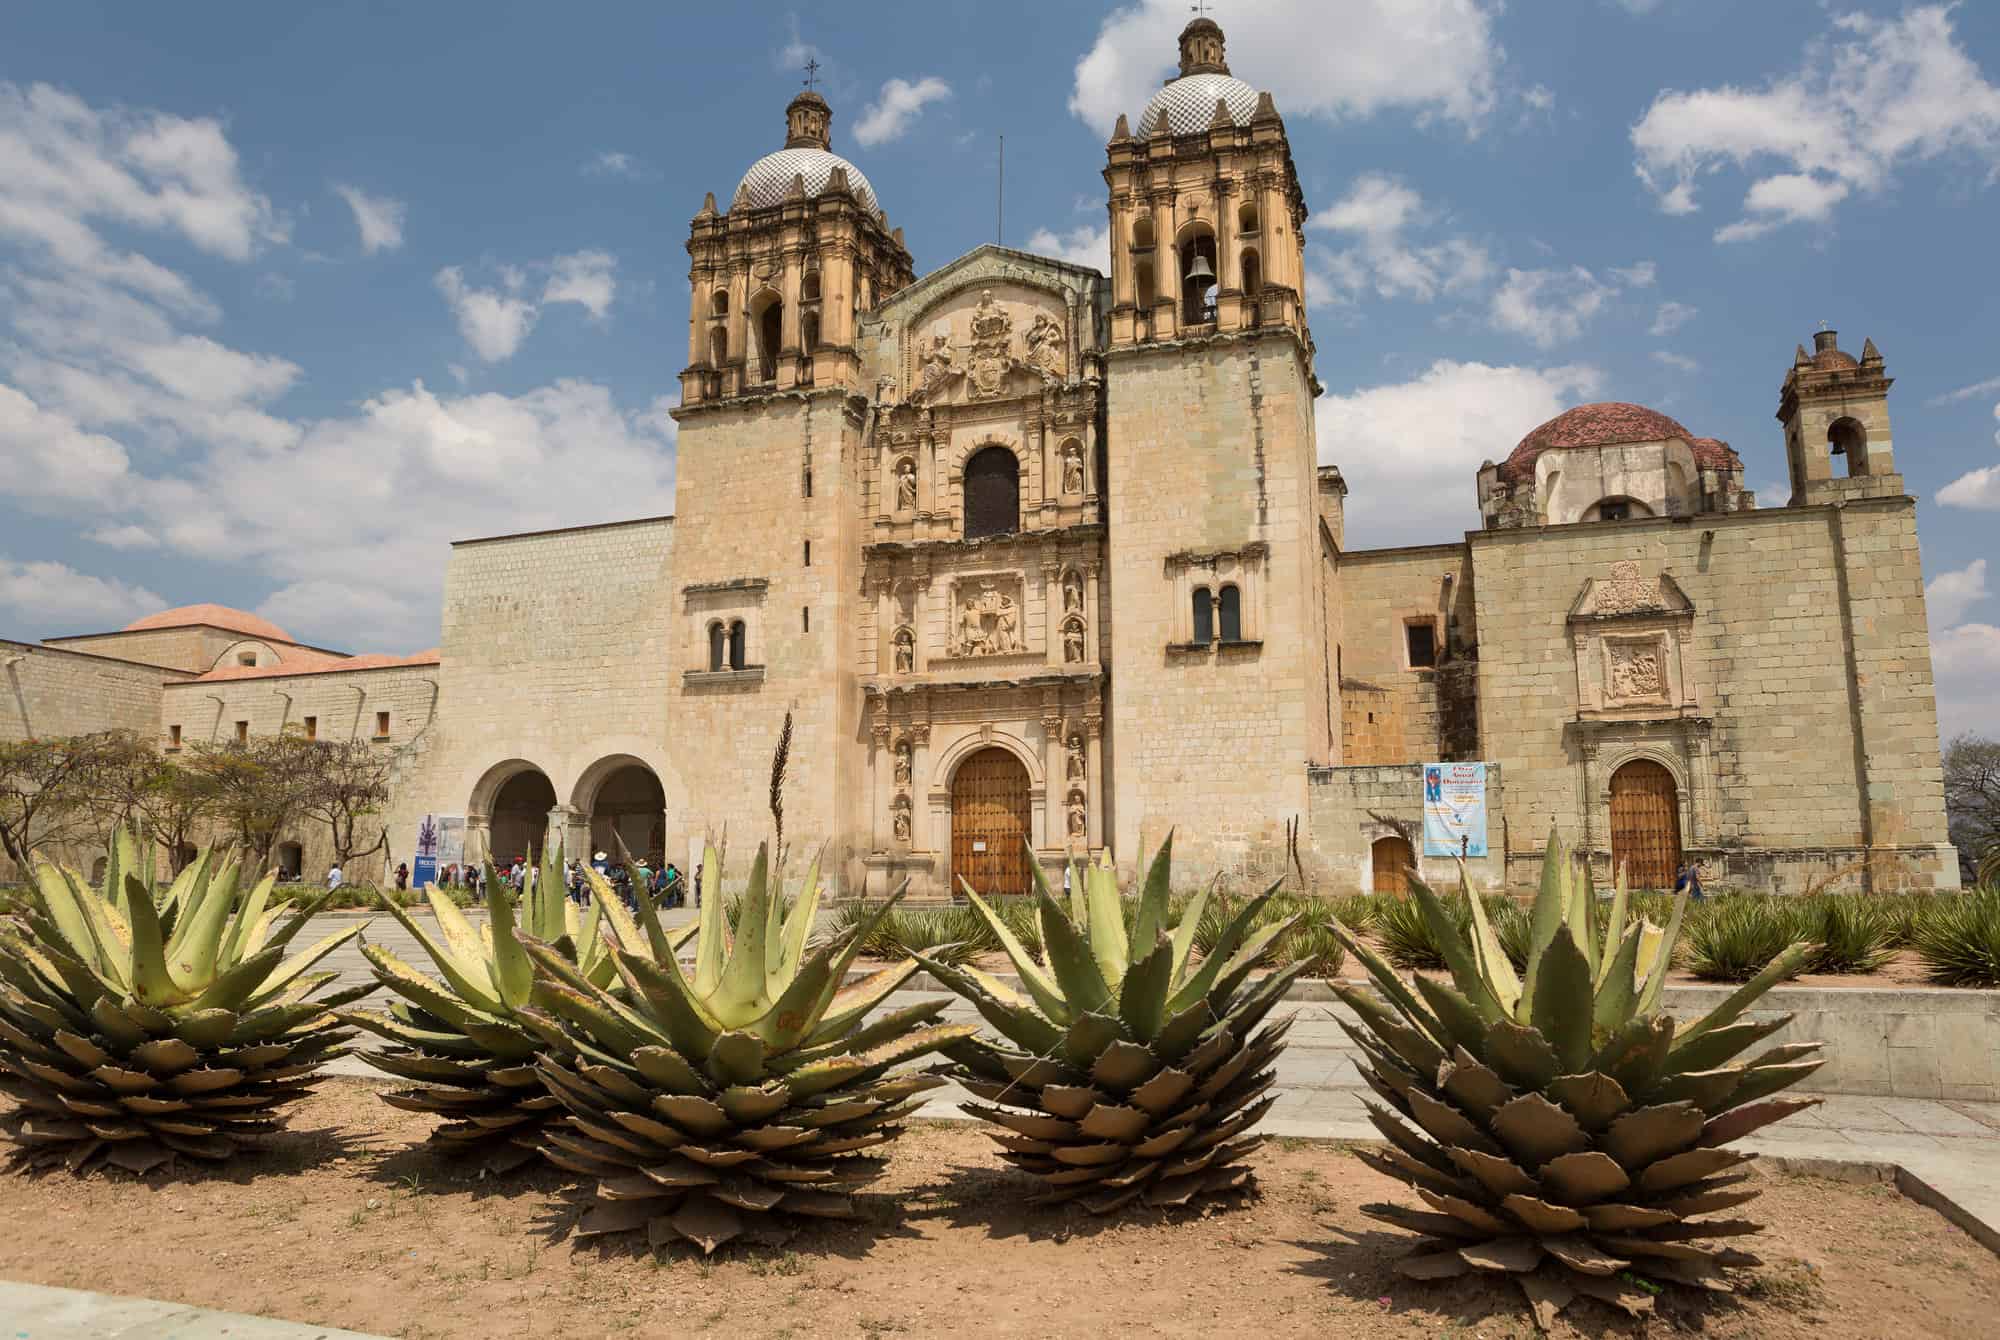  The Santo Domingo church in Oaxaca city